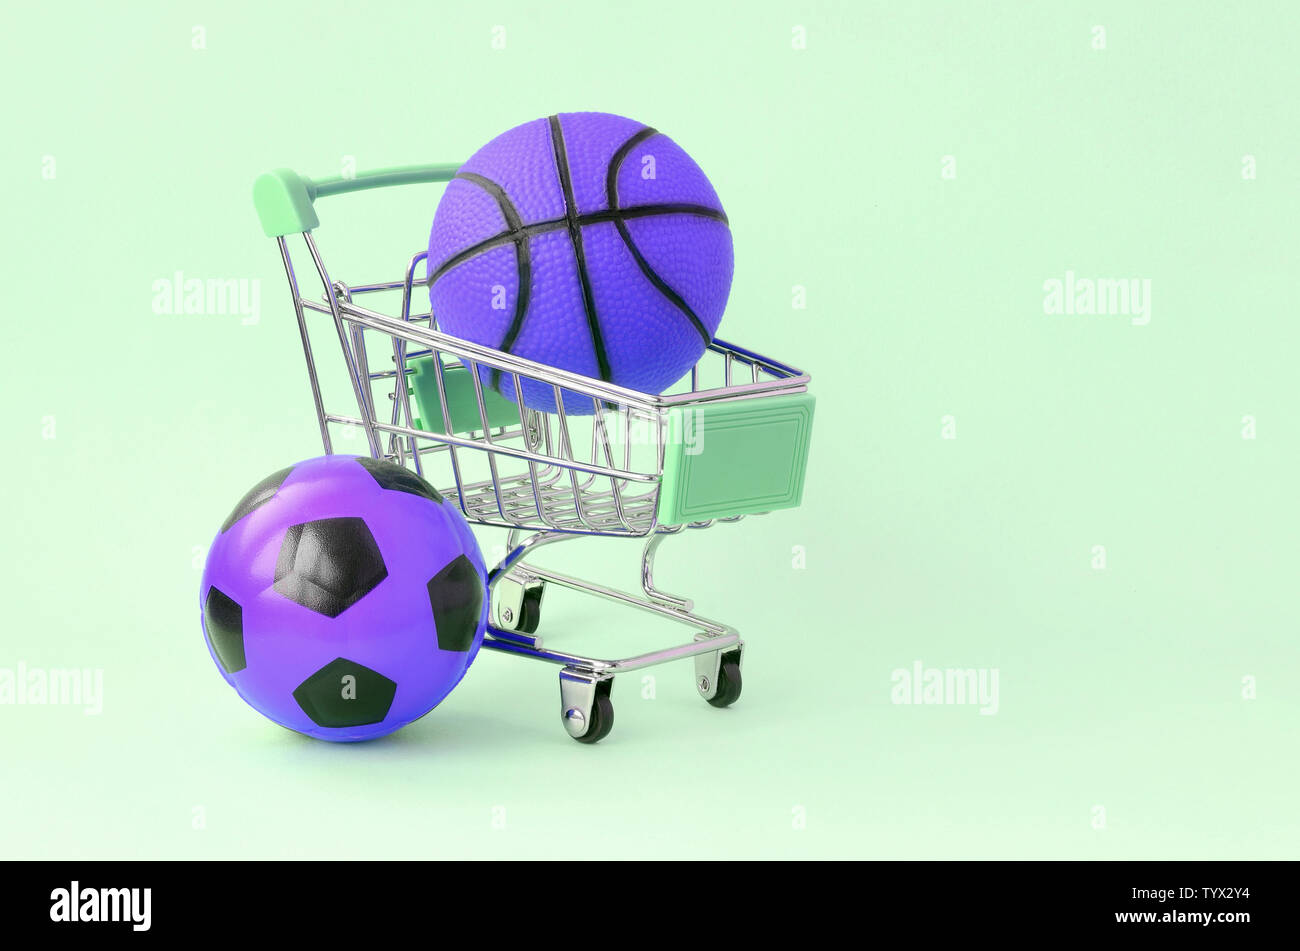 Basket-ball ballon de soccer et de violette dans votre panier sur turquoise. Le concept de vente d'équipement de sport, de prédictions pour les matchs sportifs, sports betti Banque D'Images